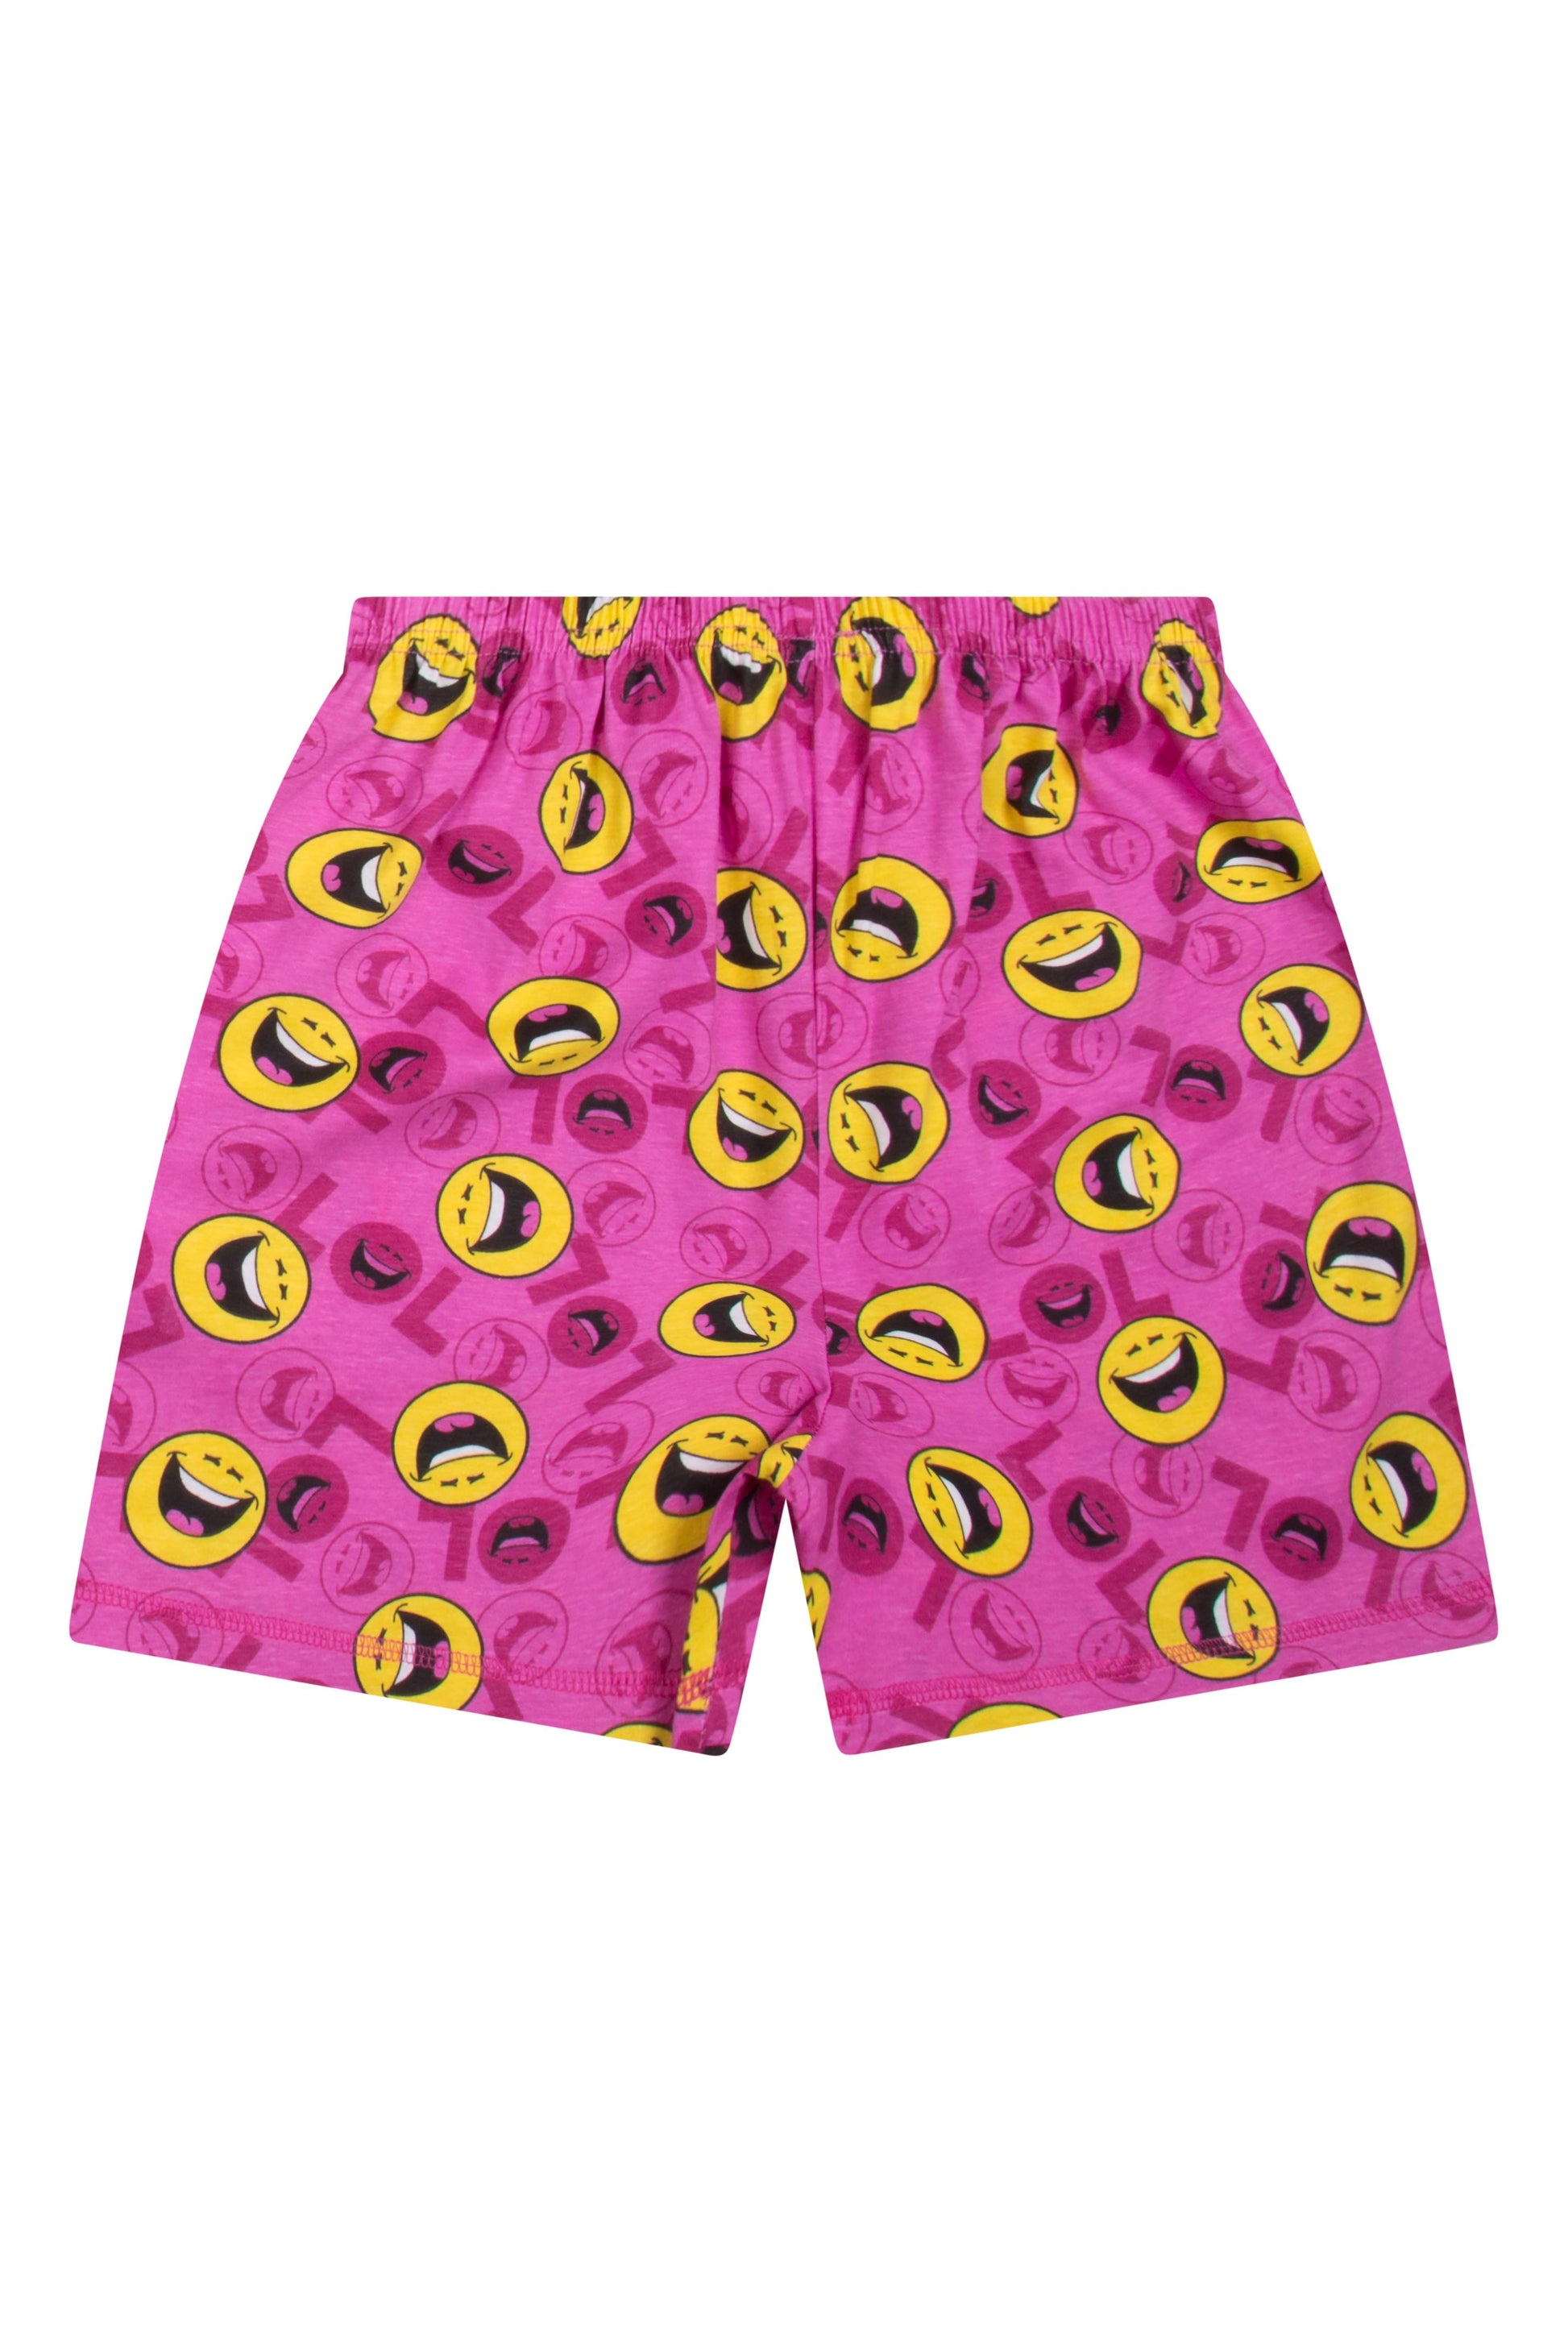 Girls LOL Short Pyjamas - Pyjamas.com